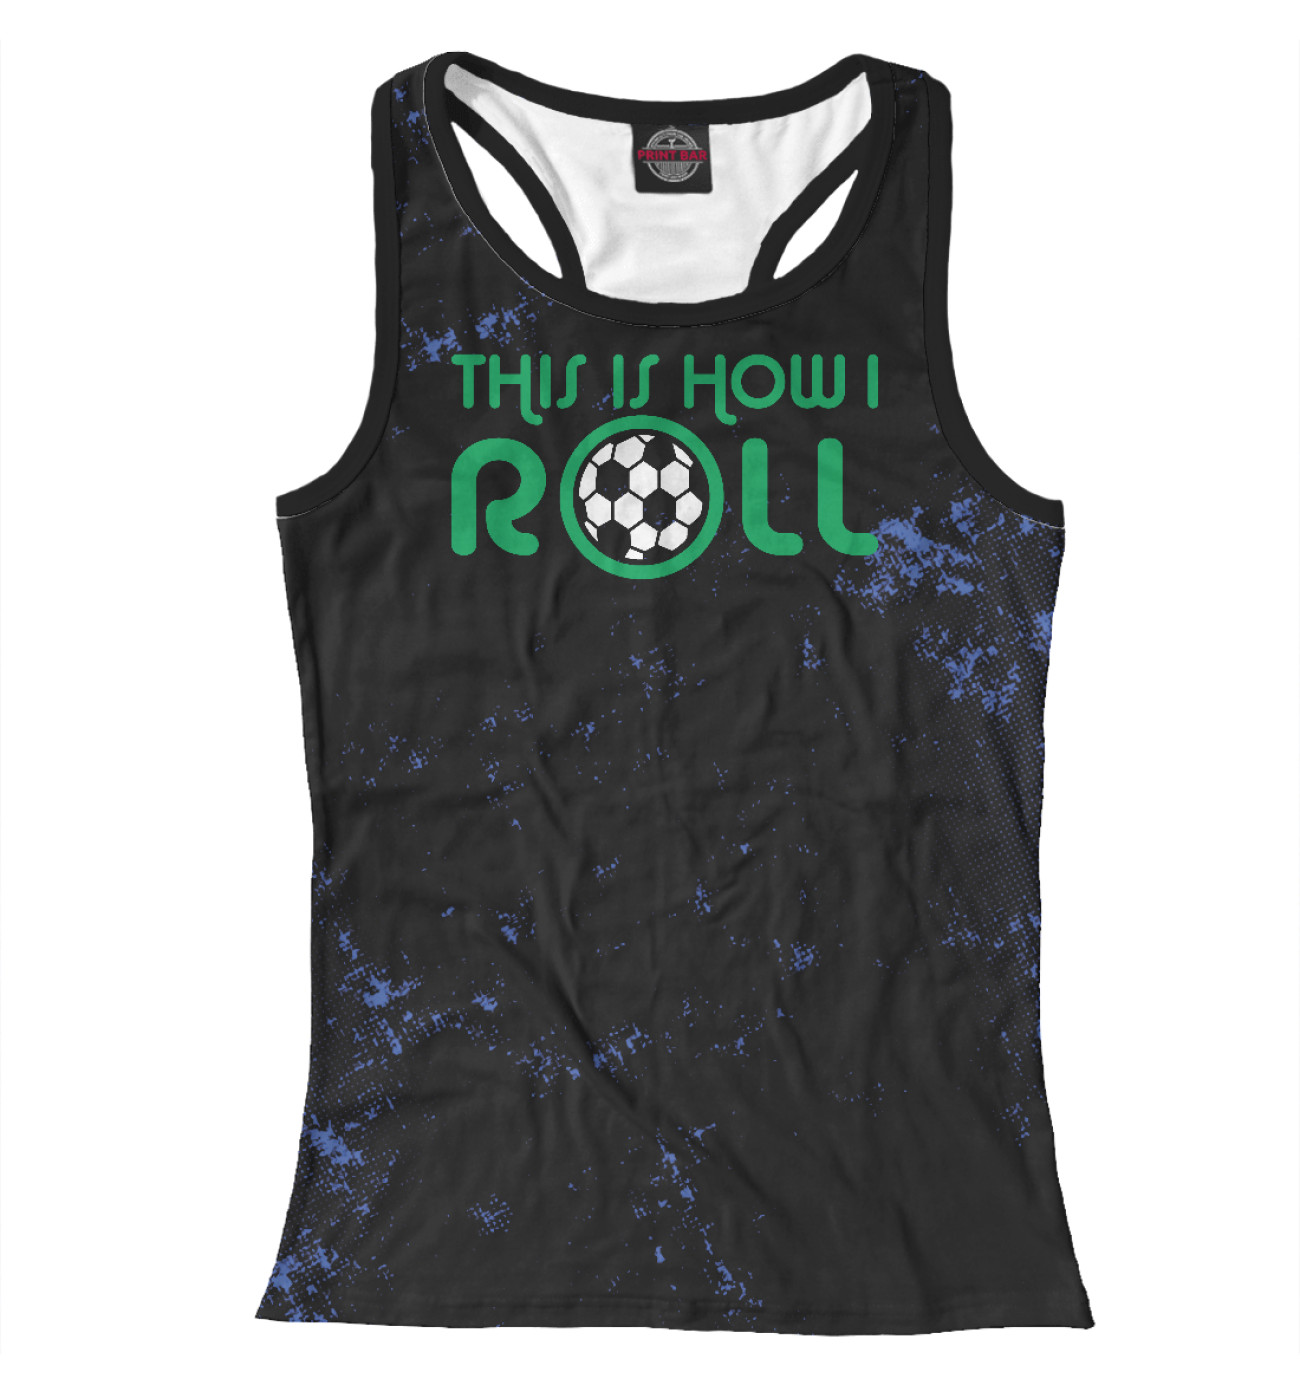 Женская Борцовка This Is How I Roll Soccer, артикул: FTO-140586-mayb-1